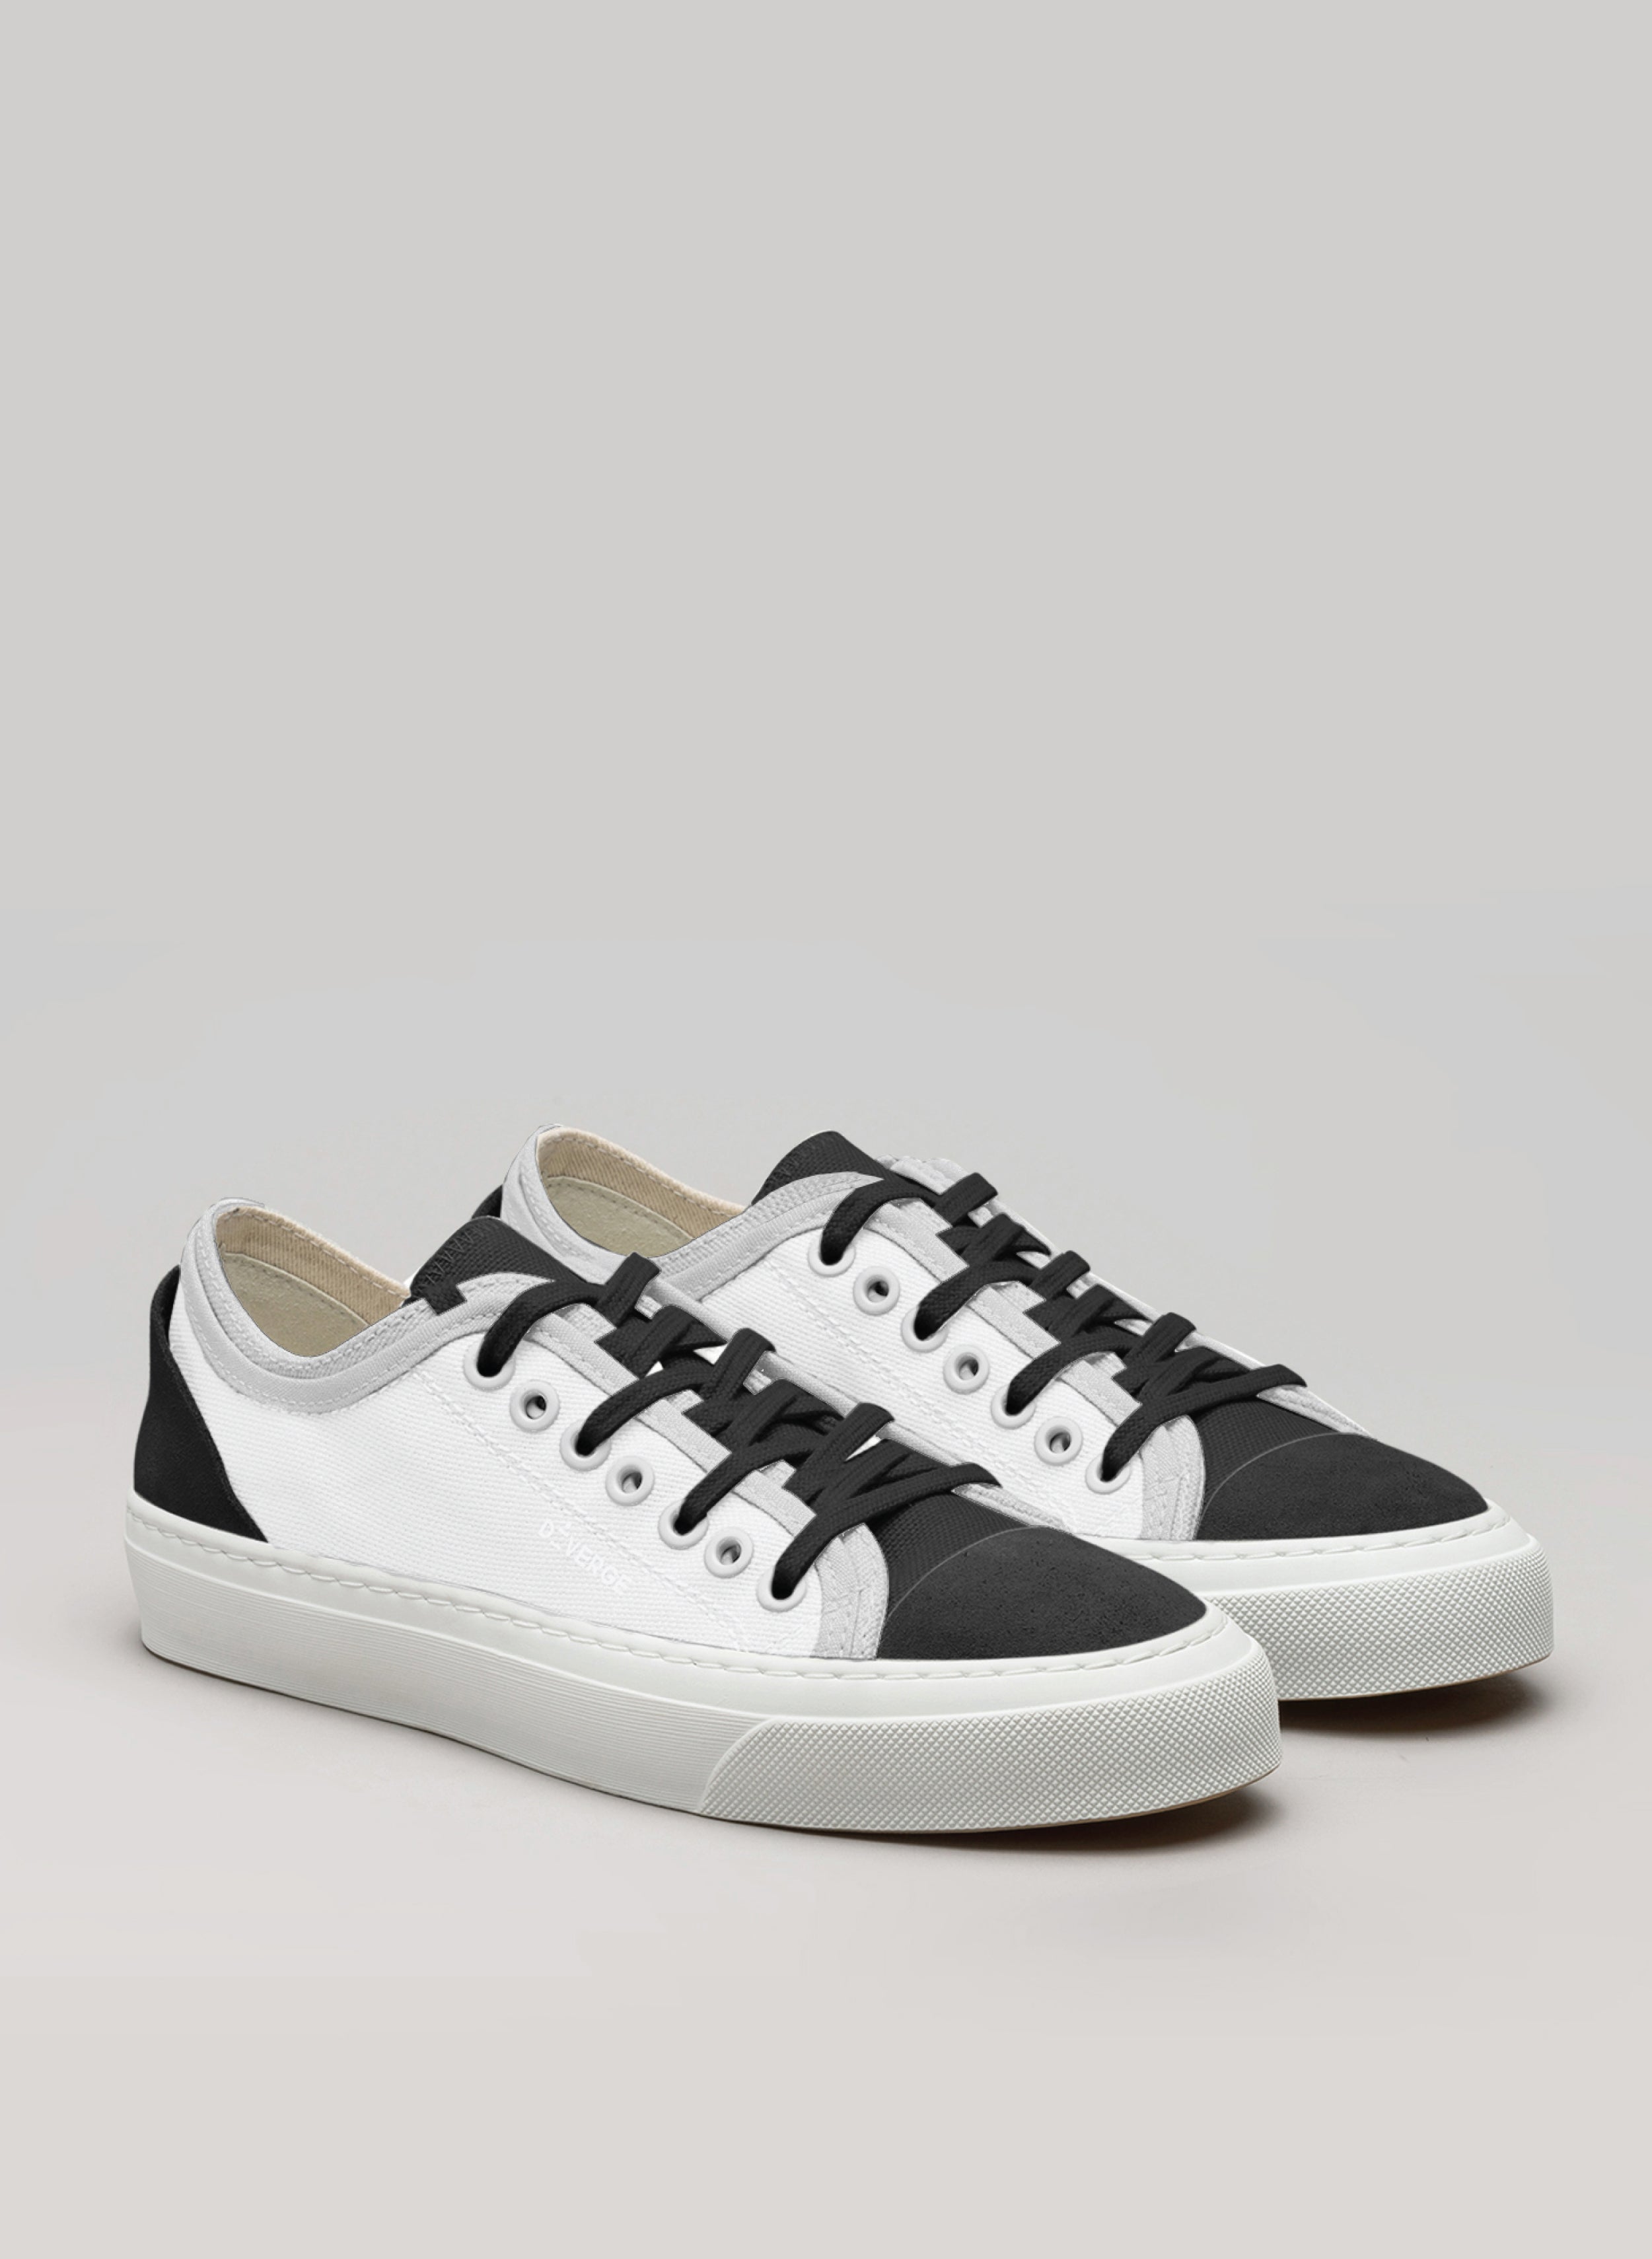 sneakers bianco e nero con suola bianca di Diverge, che promuove l'impatto sociale e le scarpe personalizzate attraverso il progetto imagine. 